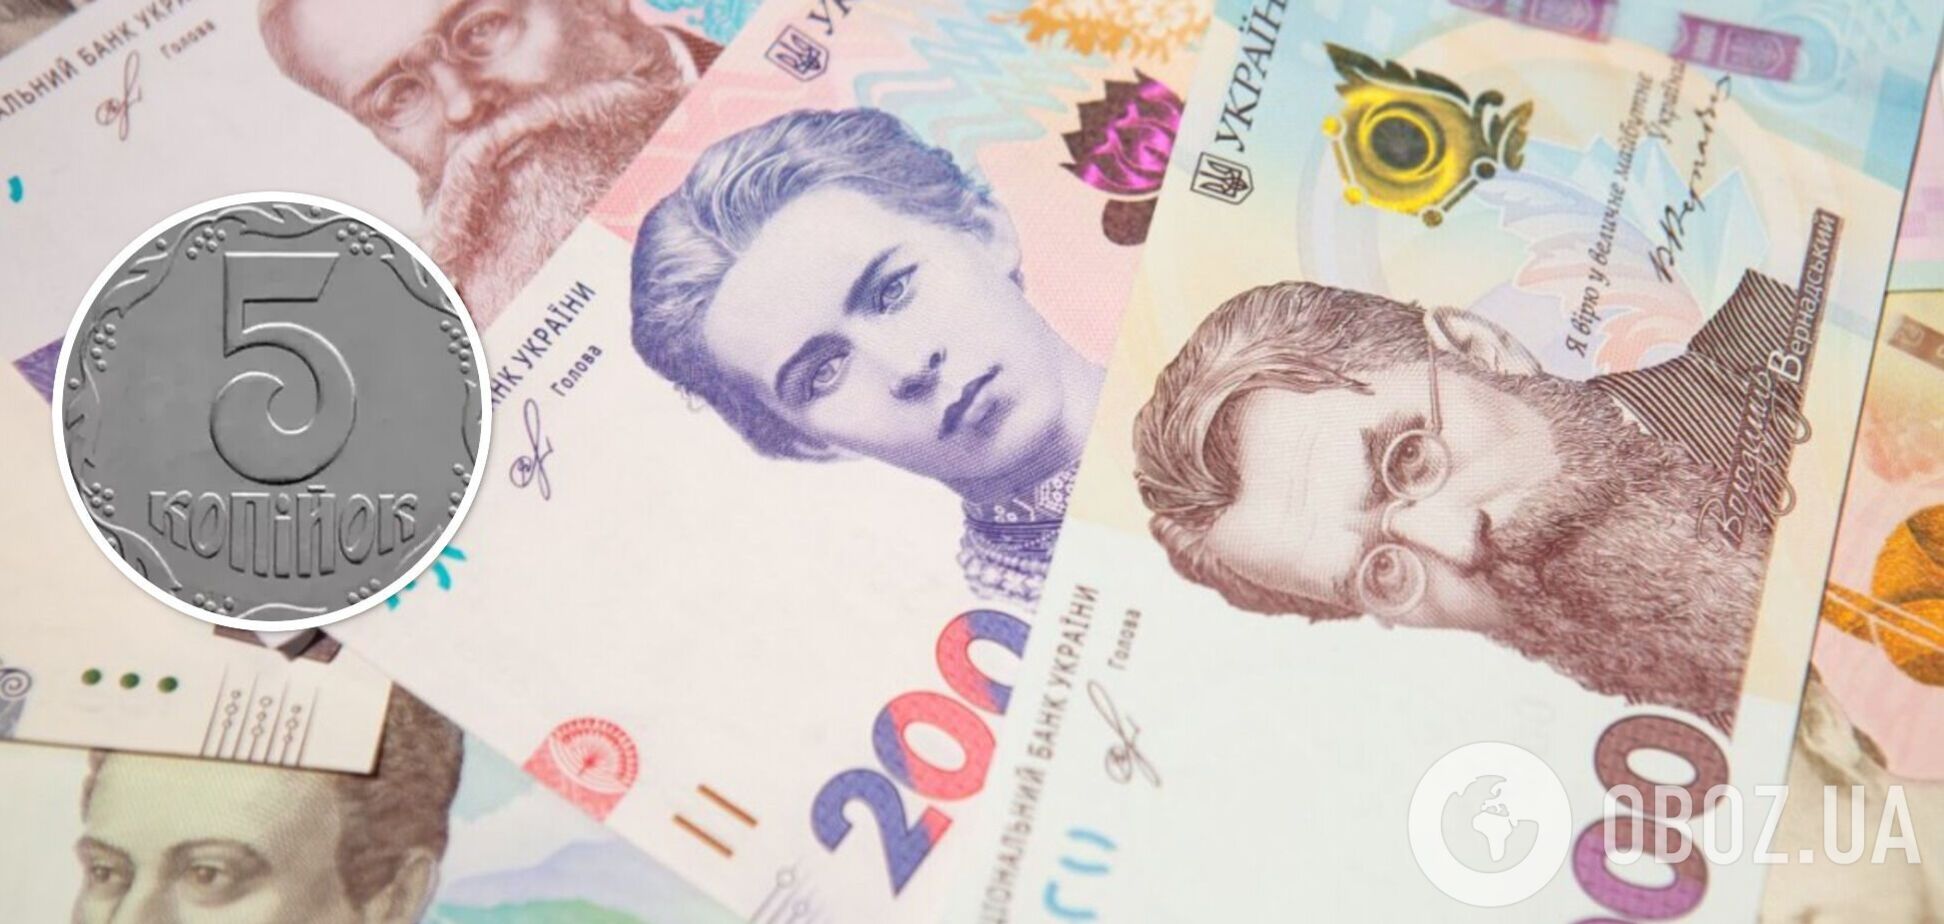 Украинцы могут обогатиться, продав монеты из старых копилок